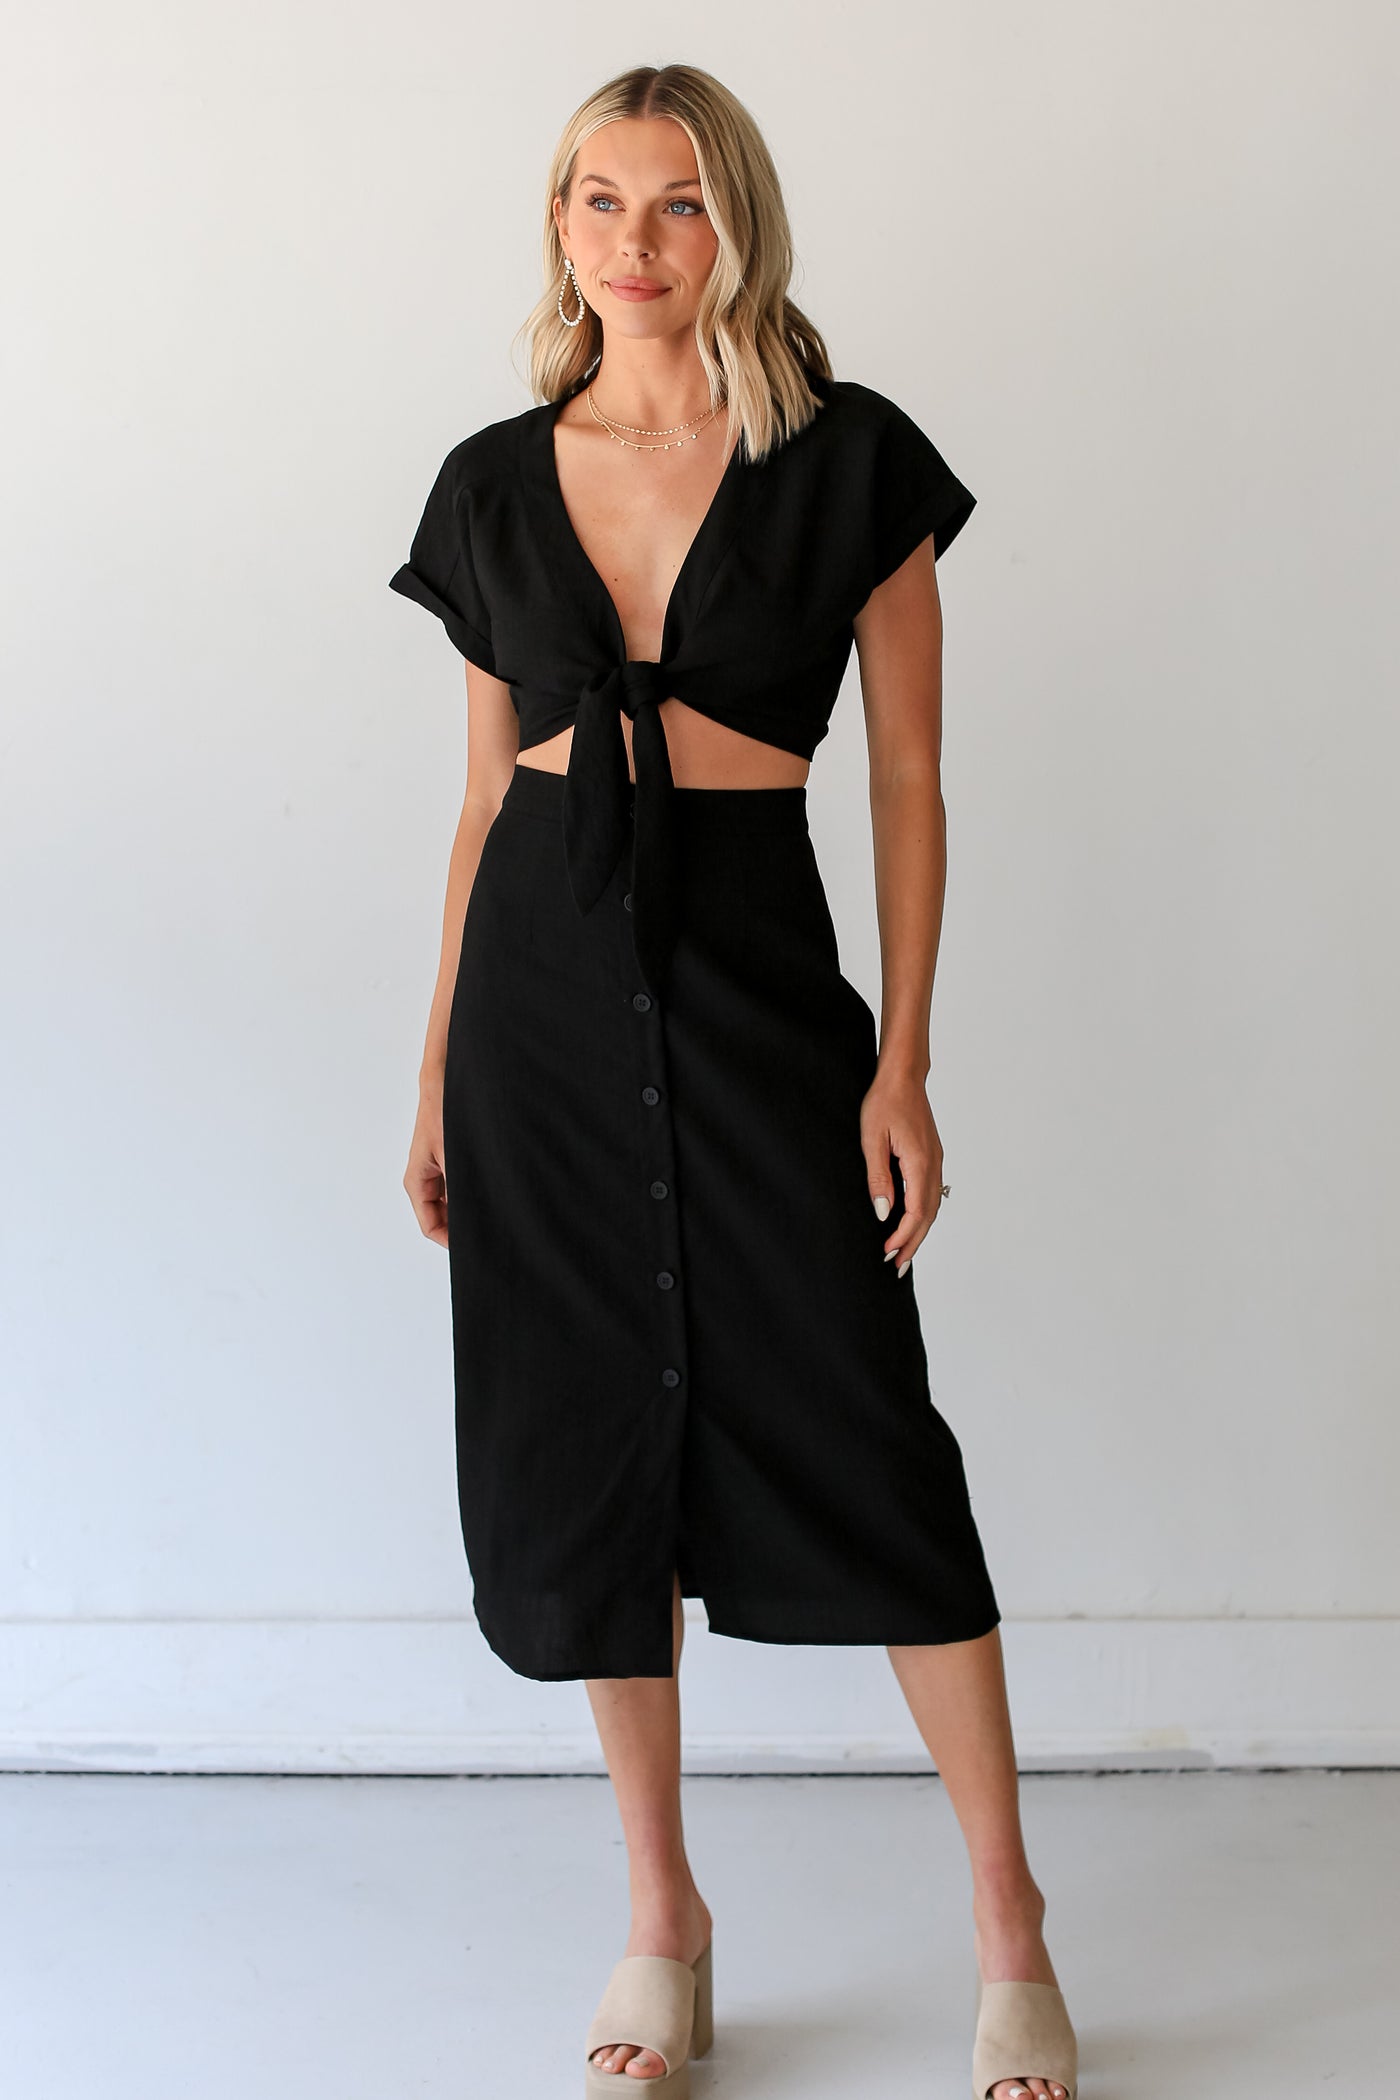 black Midi Skirt on dress up model